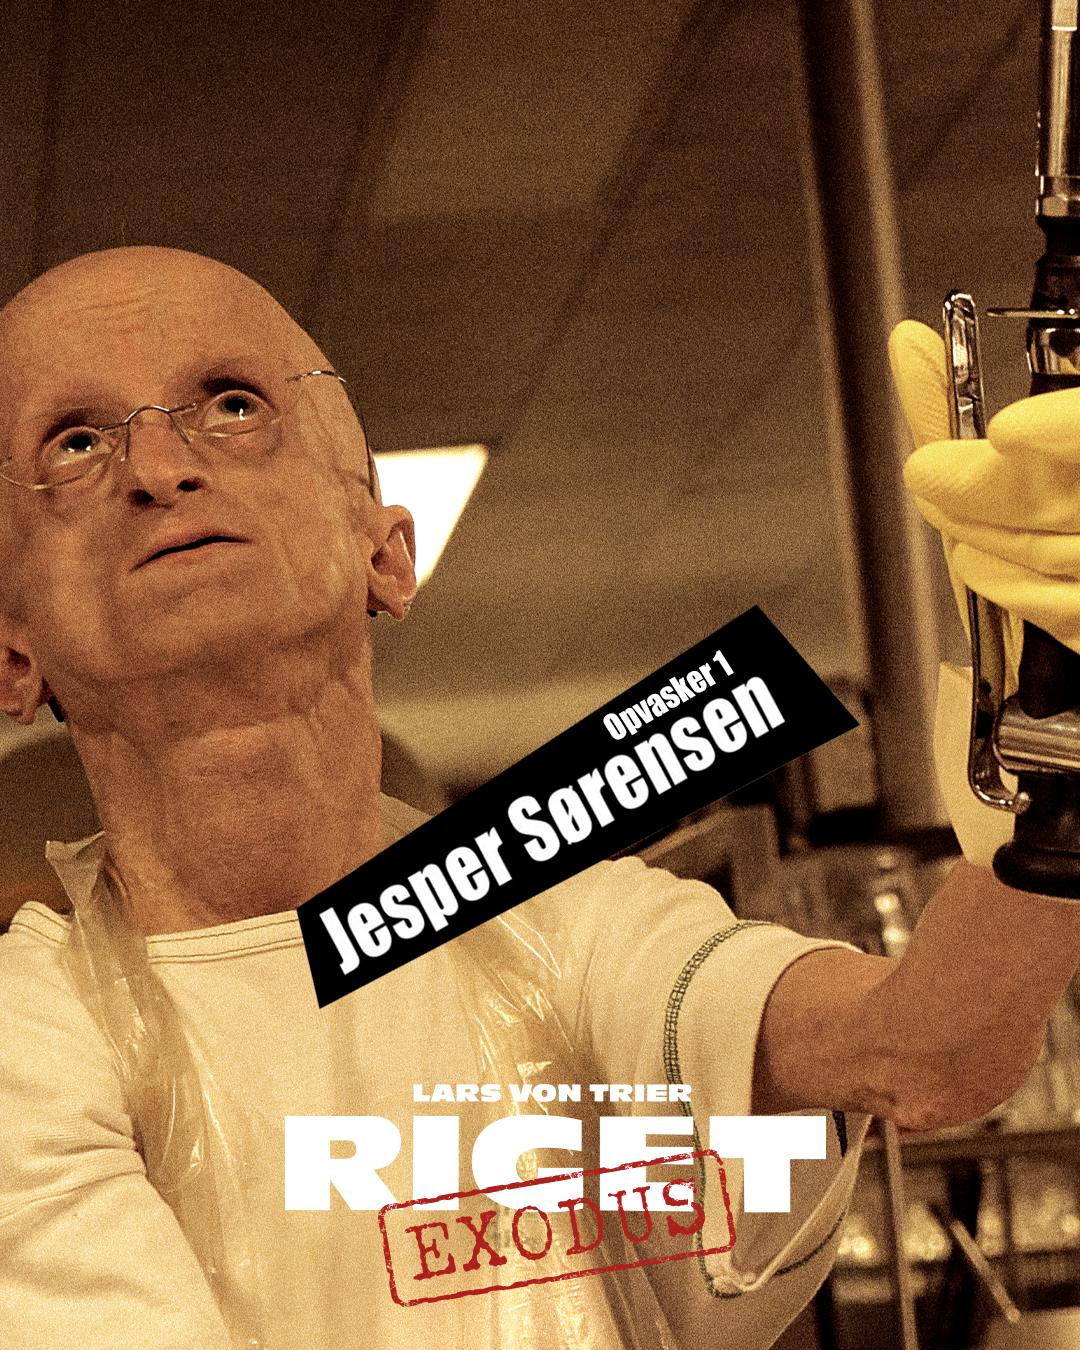 Som en af de helt overraskende castings, er Jesper Sørensen - kendt fra TV 2 som "Progeria-Jesper" - med i "Riget" som den ene af Rigshospitalets to opvaskere. Den anden er en specialfremstillet robot.
